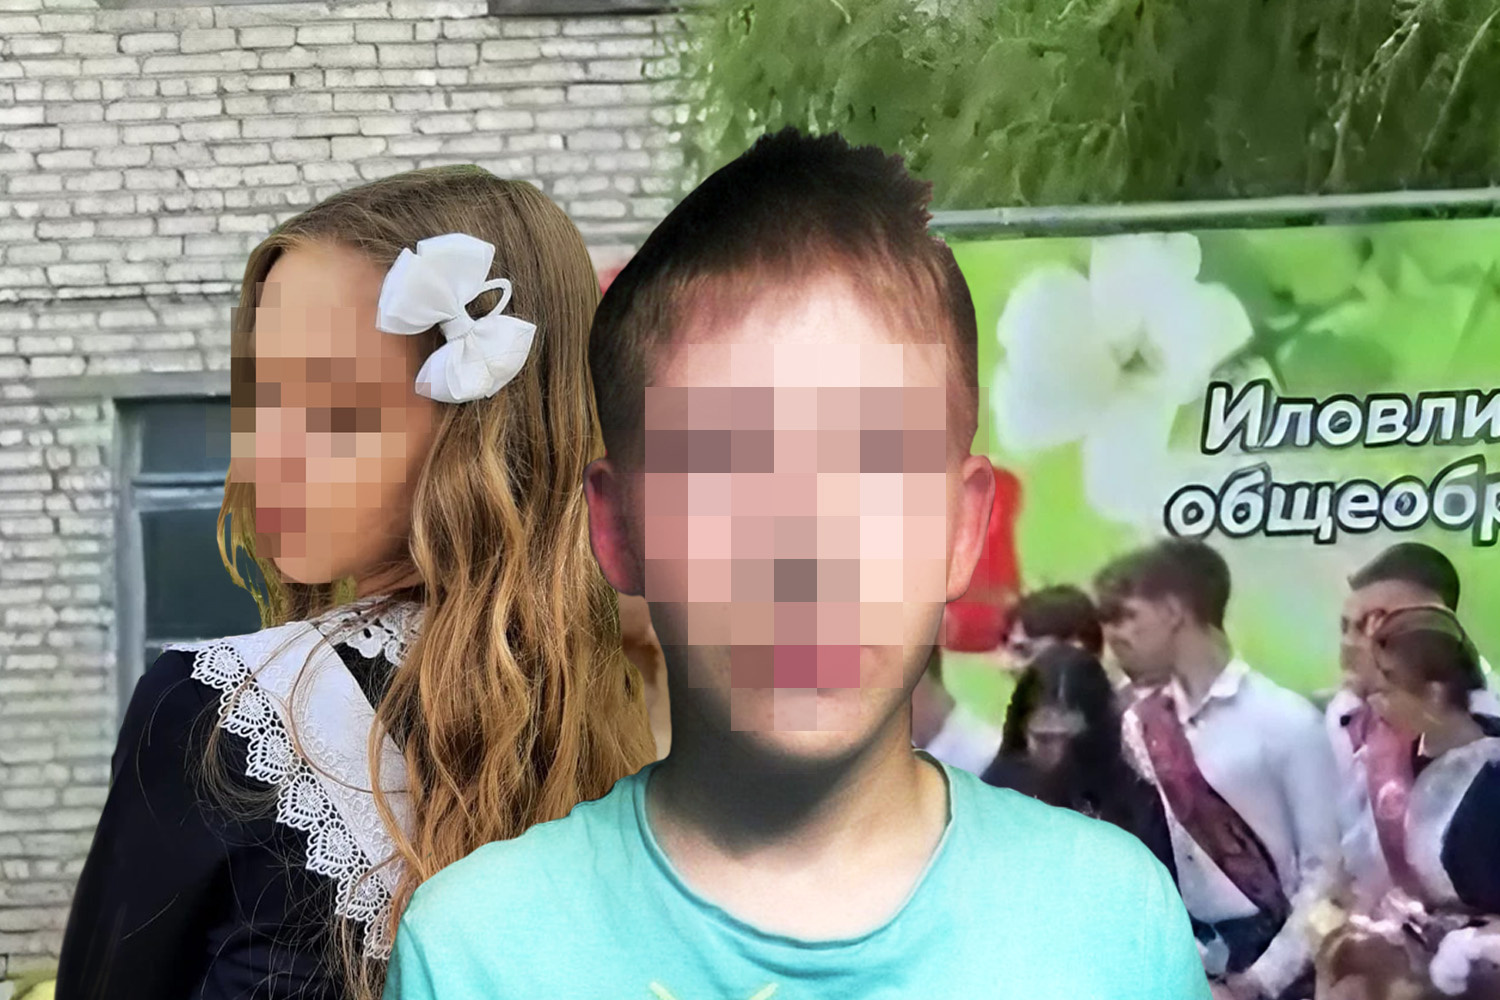 Глава администрации уверяет, что дети никогда не конфликтовалиФото: страницы школьников в соцсетях; Mash / Telegram; Мария Романова